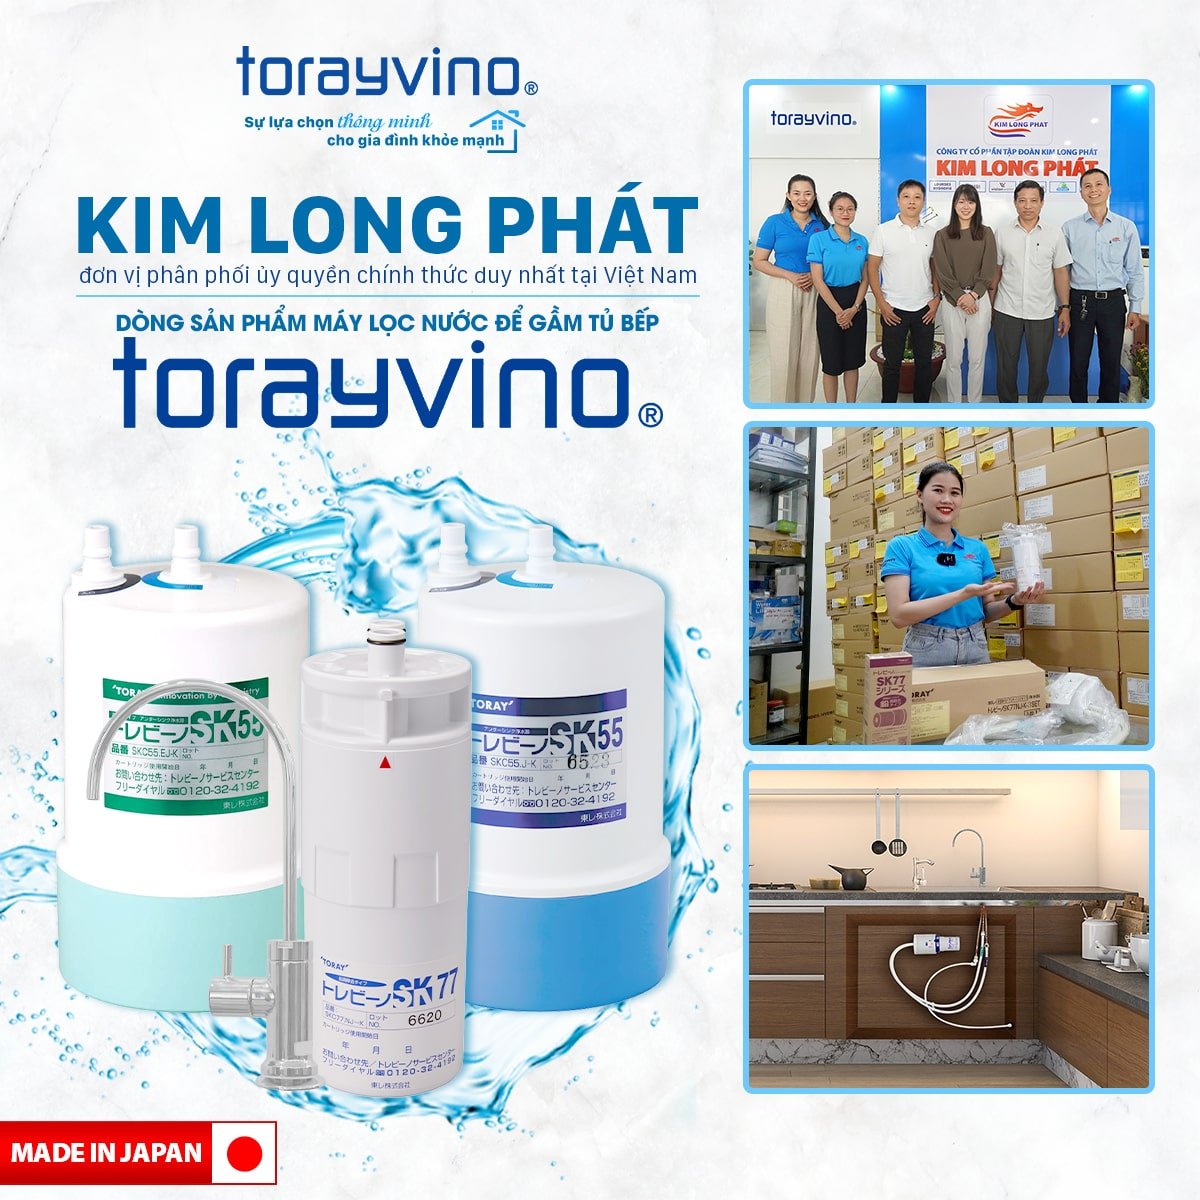 Thương hiệu máy lọc nước để gầm tủ bếp Torayvino hàng đầu Nhật Bản đã có mặt tại thị trường Việt Nam đầu năm 2023